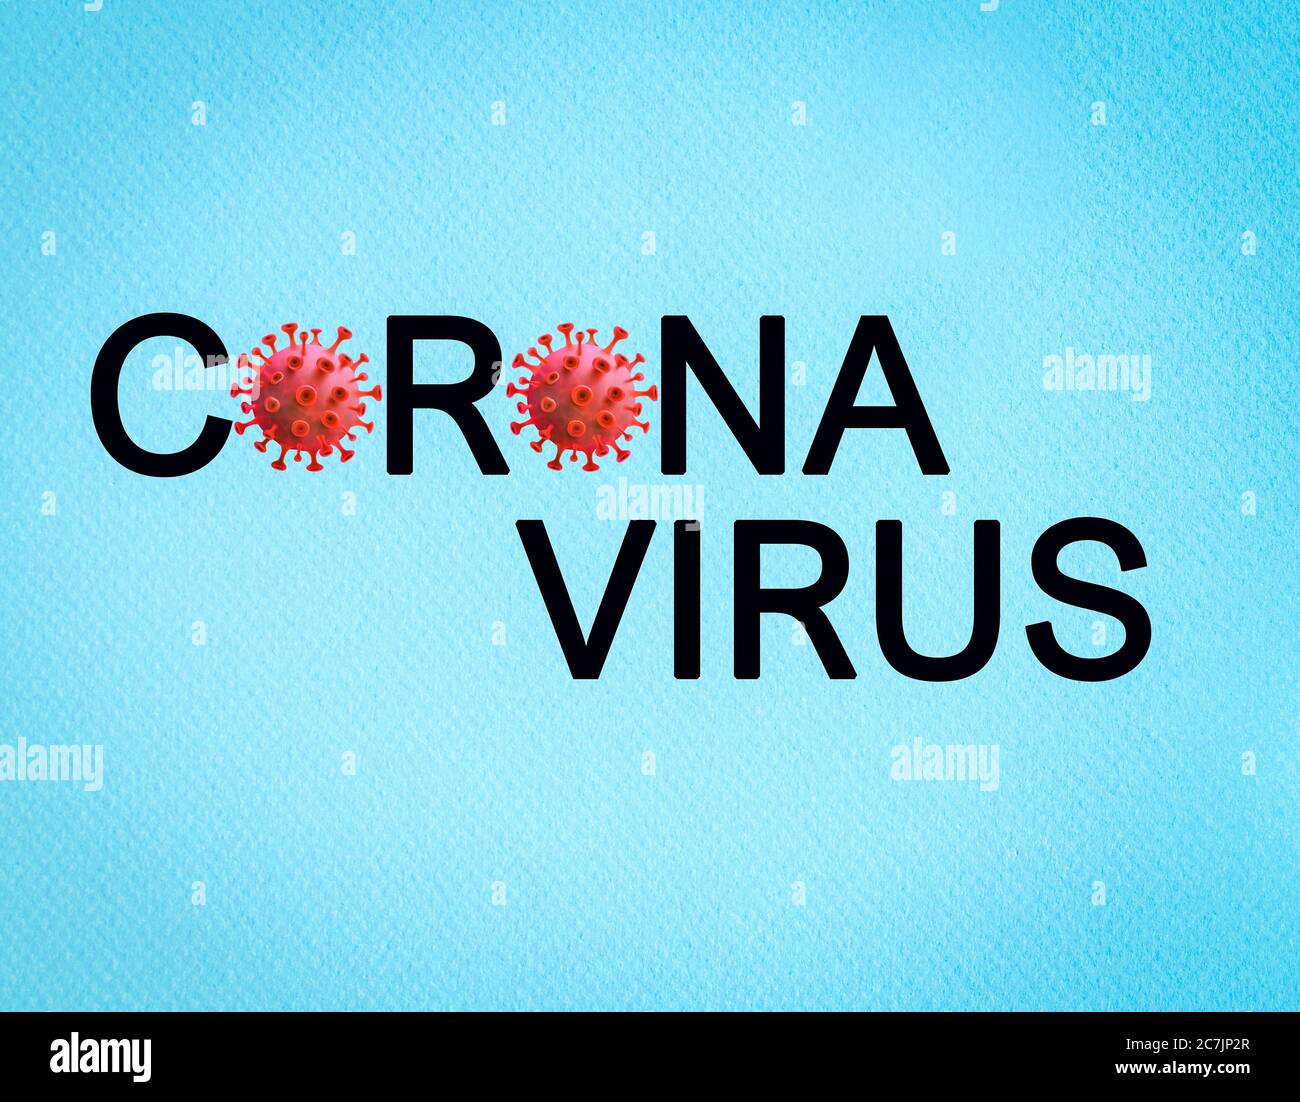 Texto del virus Corona sobre fondo azul. Covid 19 Concepto de protección pandémica. Foto de stock